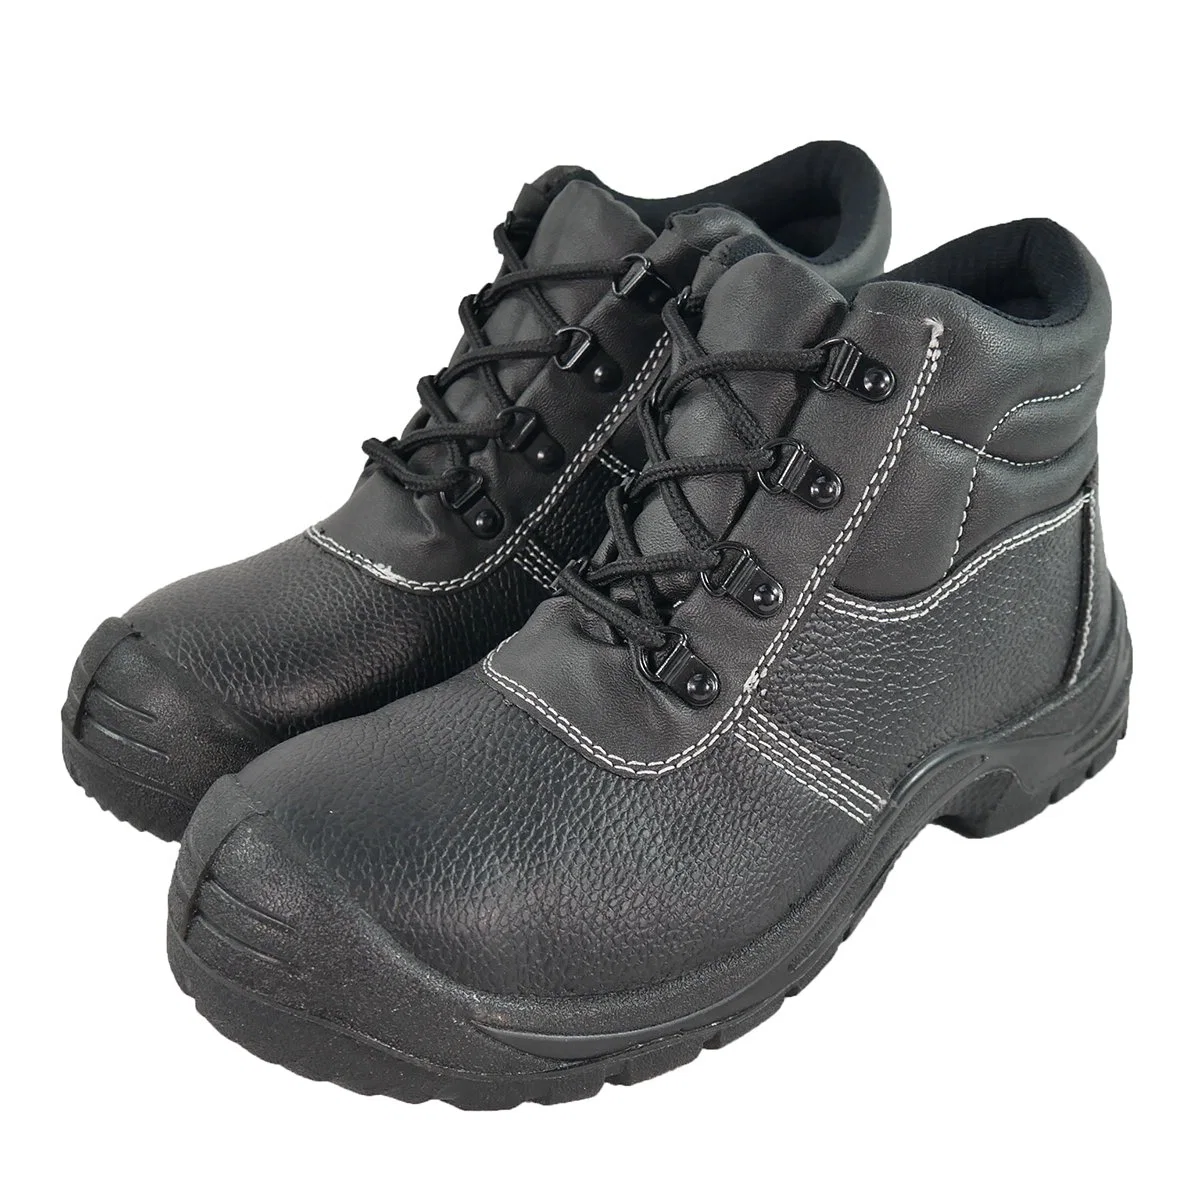 De nouveaux travaux de protection industrielle Vente chaude Casual Sneakers Chaussures de sécurité de la TOE d'hommes de fer des chaussures noires de protection